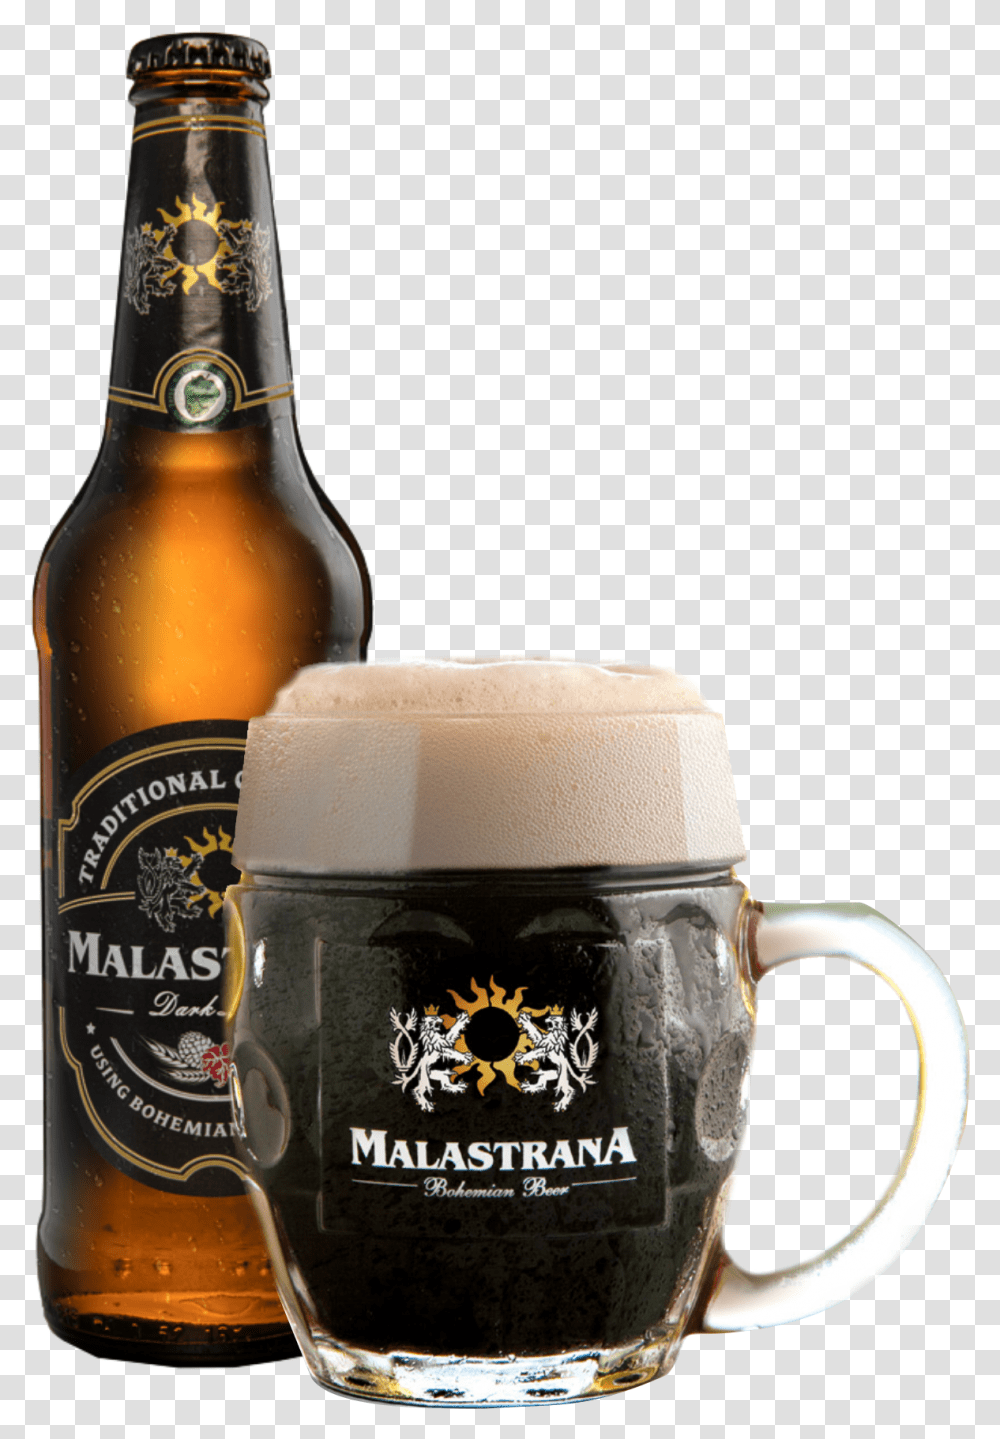 Malastrana Dark Beer Bottle, Alcohol, Beverage, Drink, Glass Transparent Png